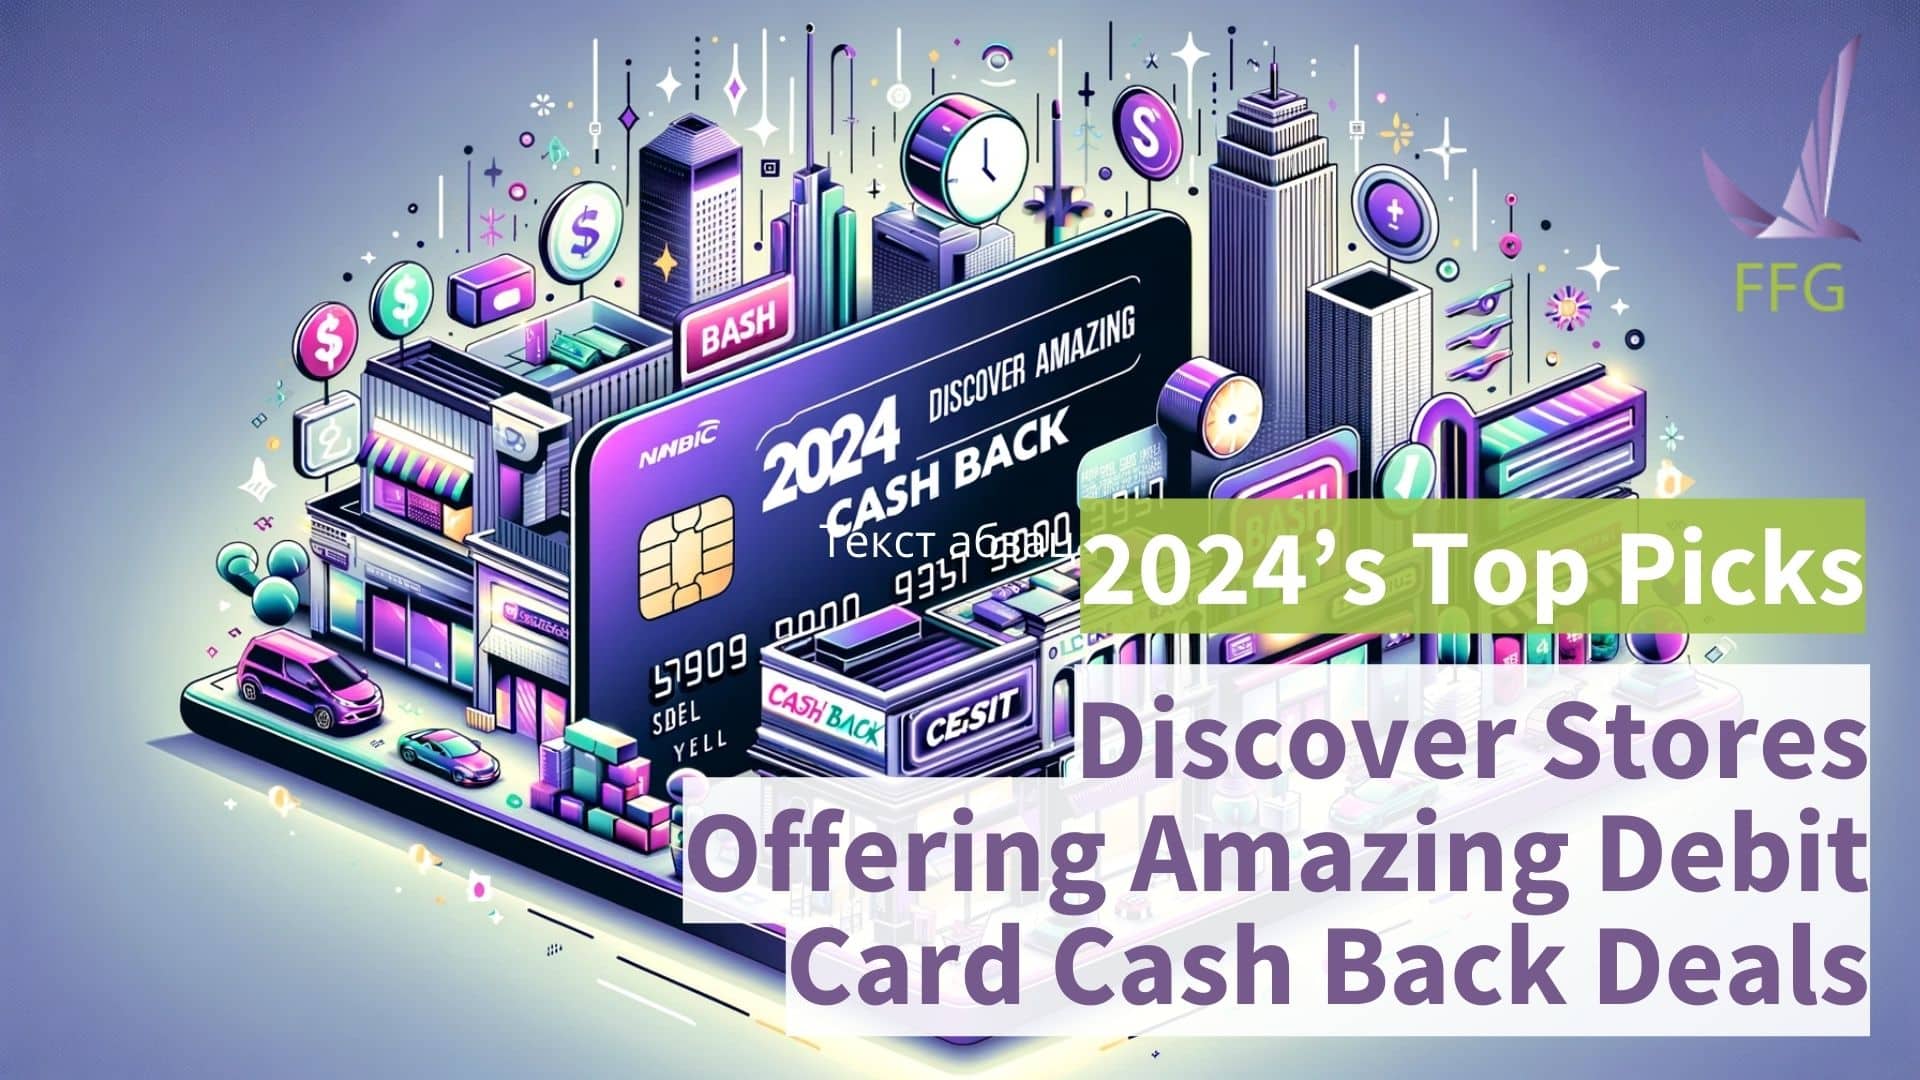 debit card cash dack deals in 2024